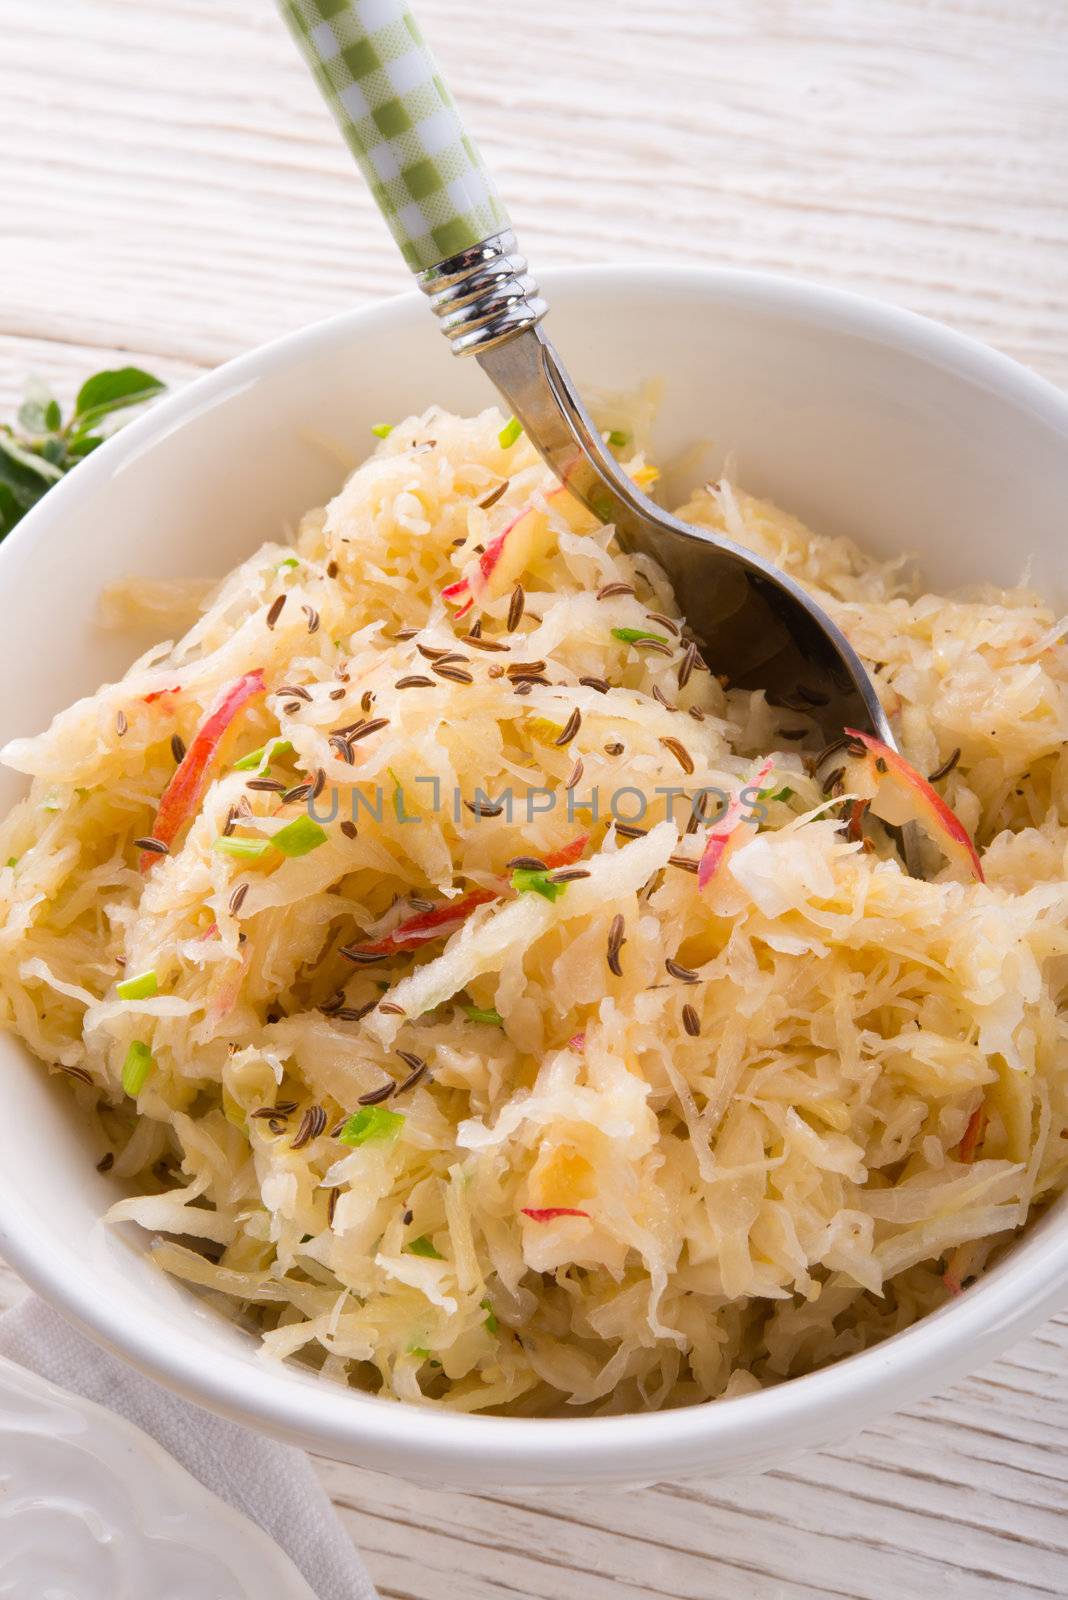 sauerkraut with ingredients by Darius.Dzinnik